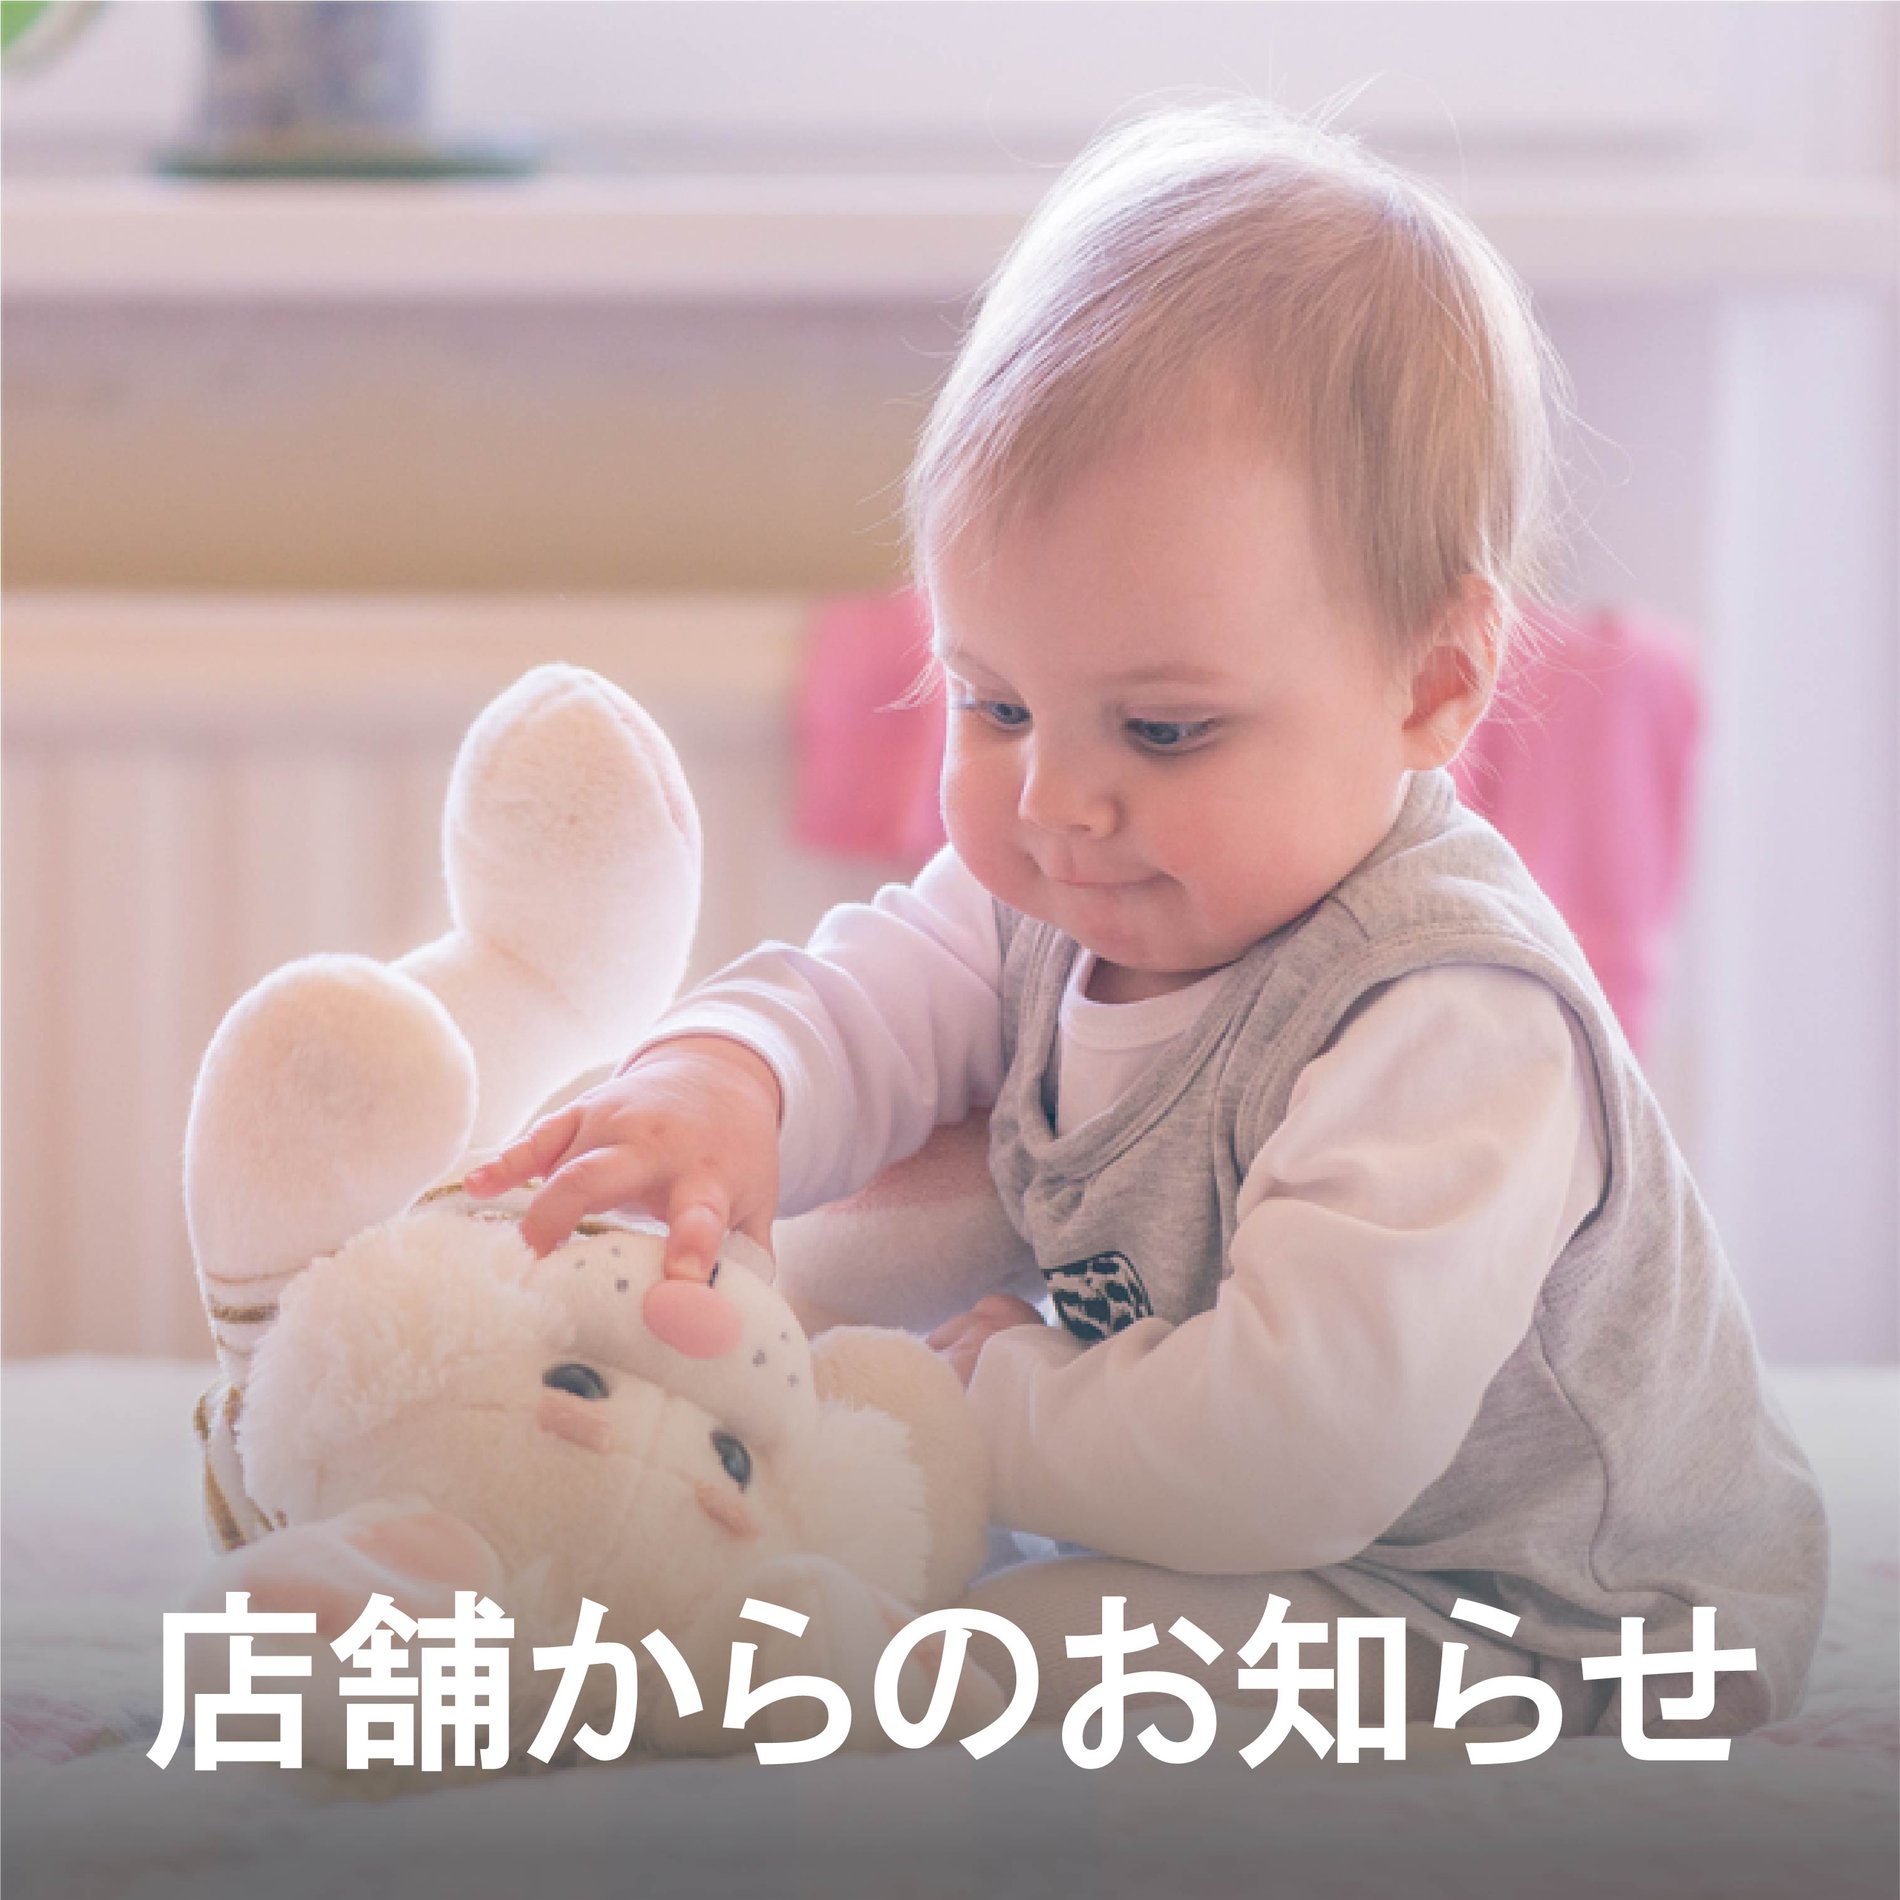 赤ちゃん用品 マタニティ用品のアカチャンホンポ 店舗一覧 静岡県 磐田市